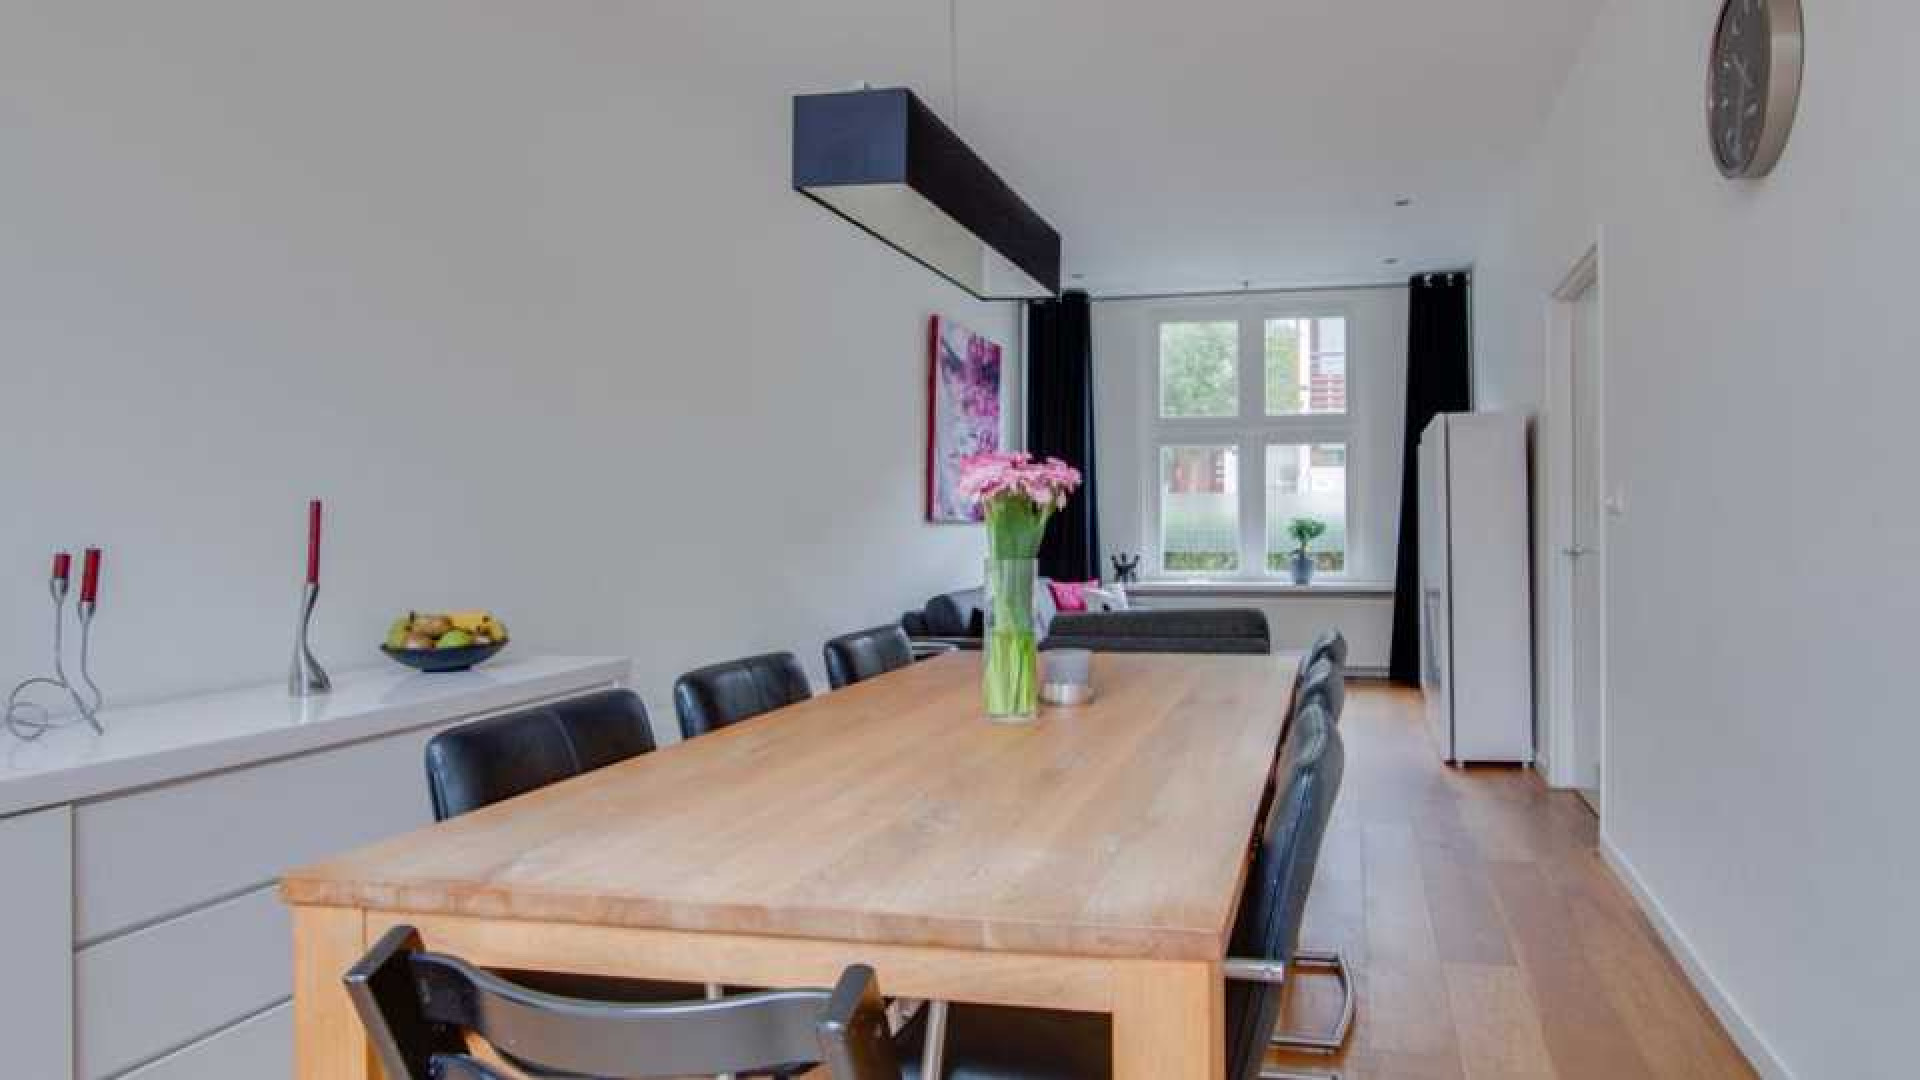 Domien Verschuuren van Serious Request koopt eengezinswoning in Utrecht. Zie foto's